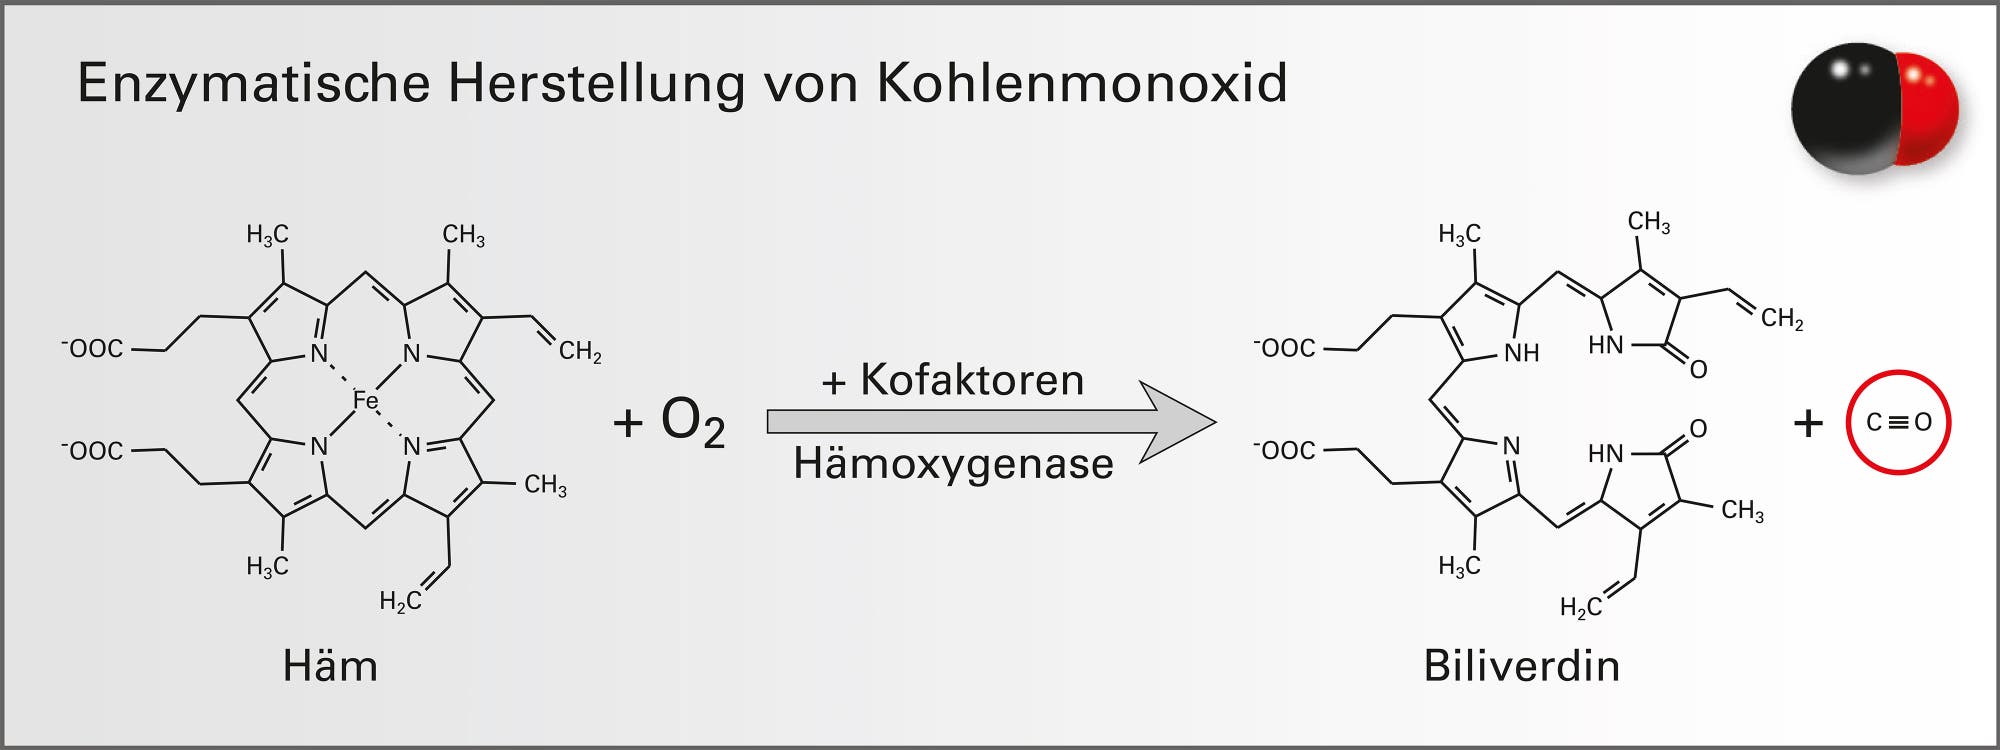 Enzymatische Herstellung von Kohlenmonoxid